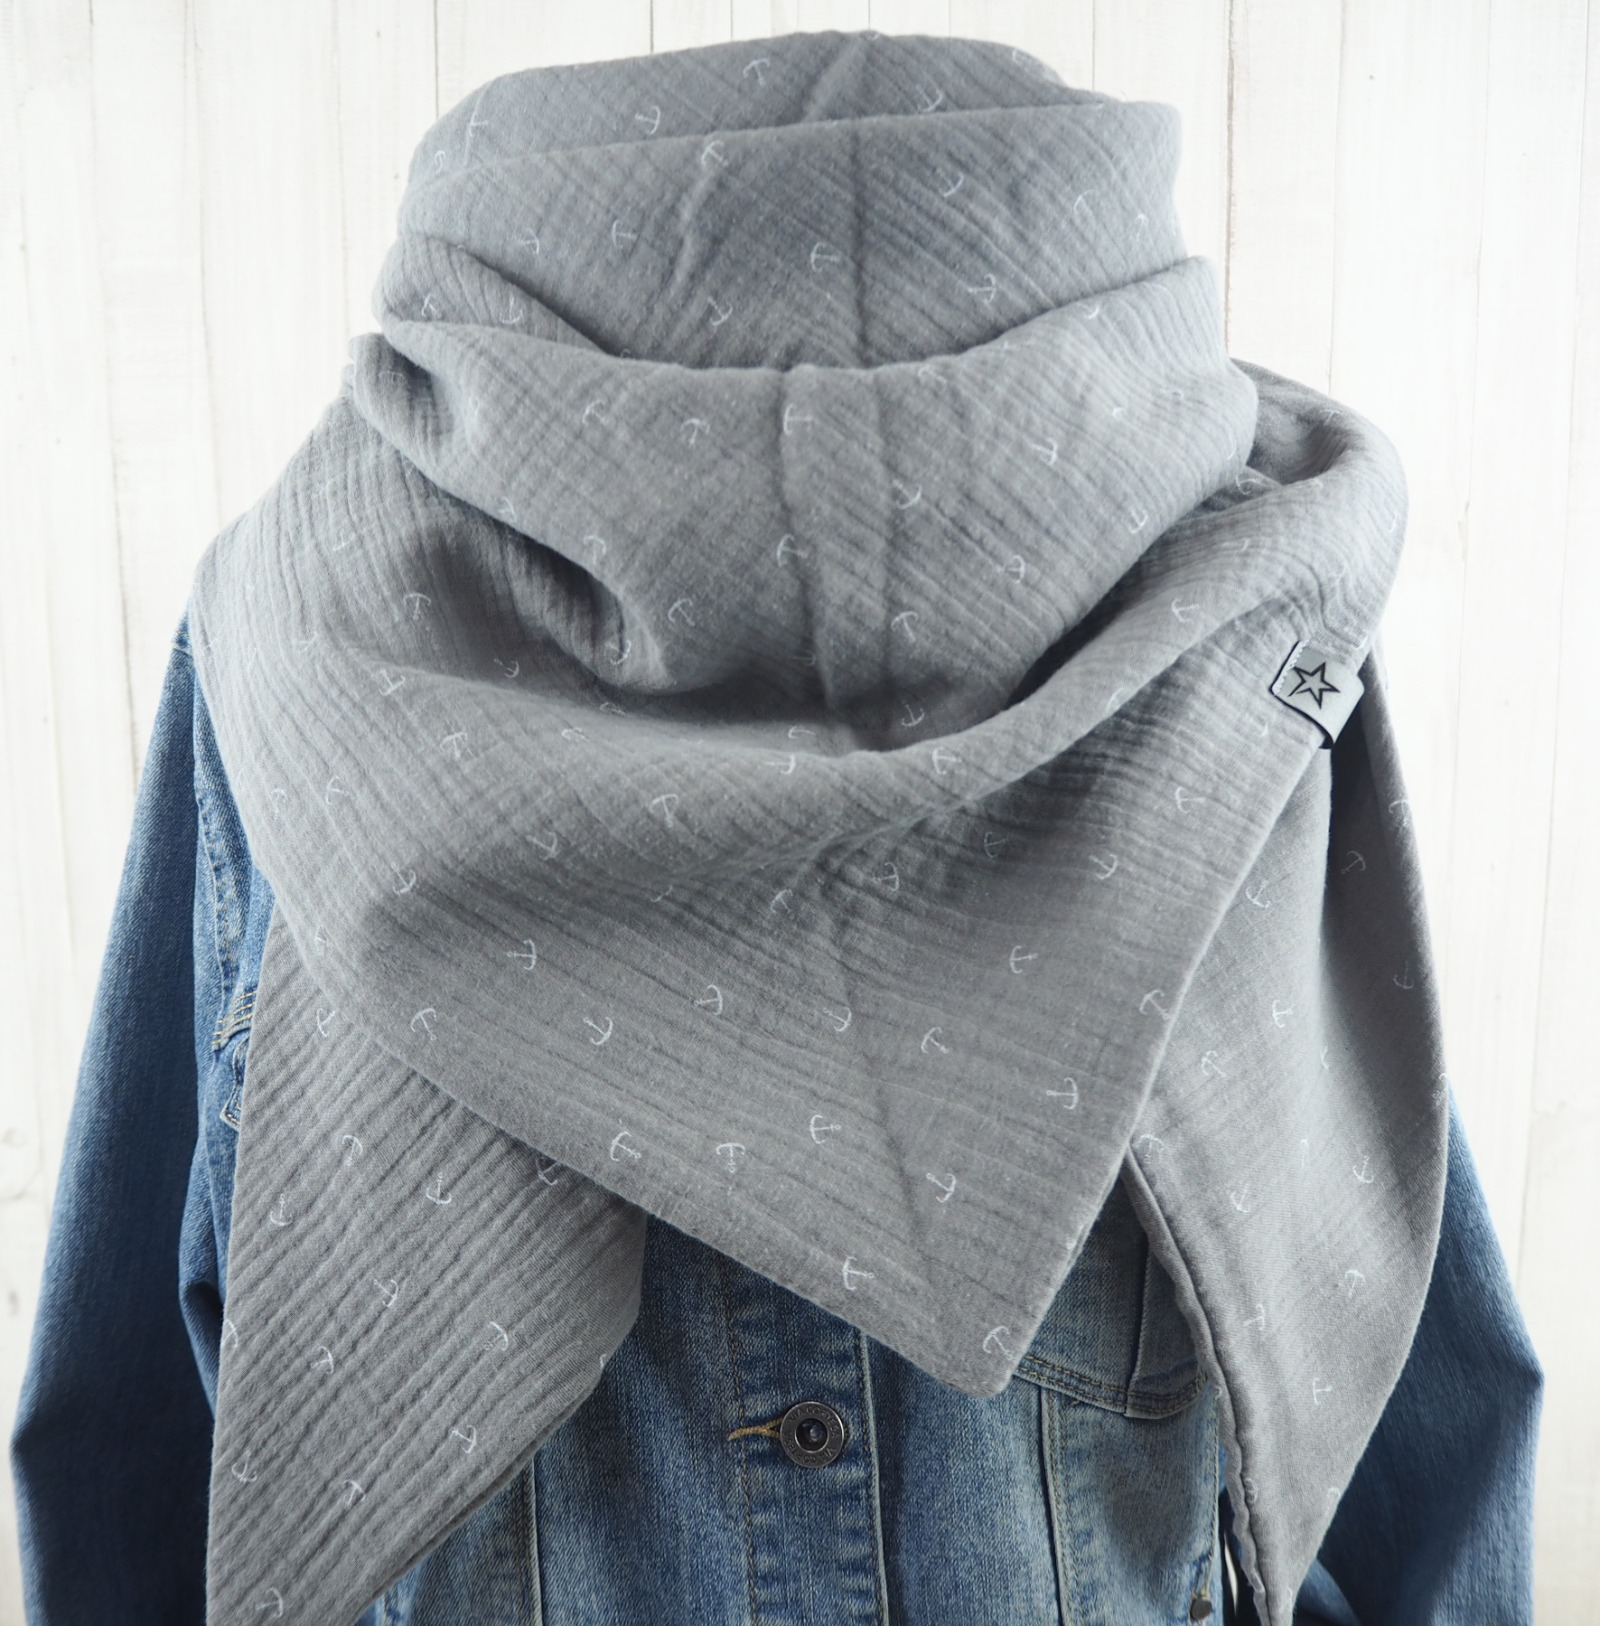 Tuch Anker - Dreieckstuch Musselin Damen - Schal grau mit Ankern in weiß - XXL Tuch aus Baumwolle -